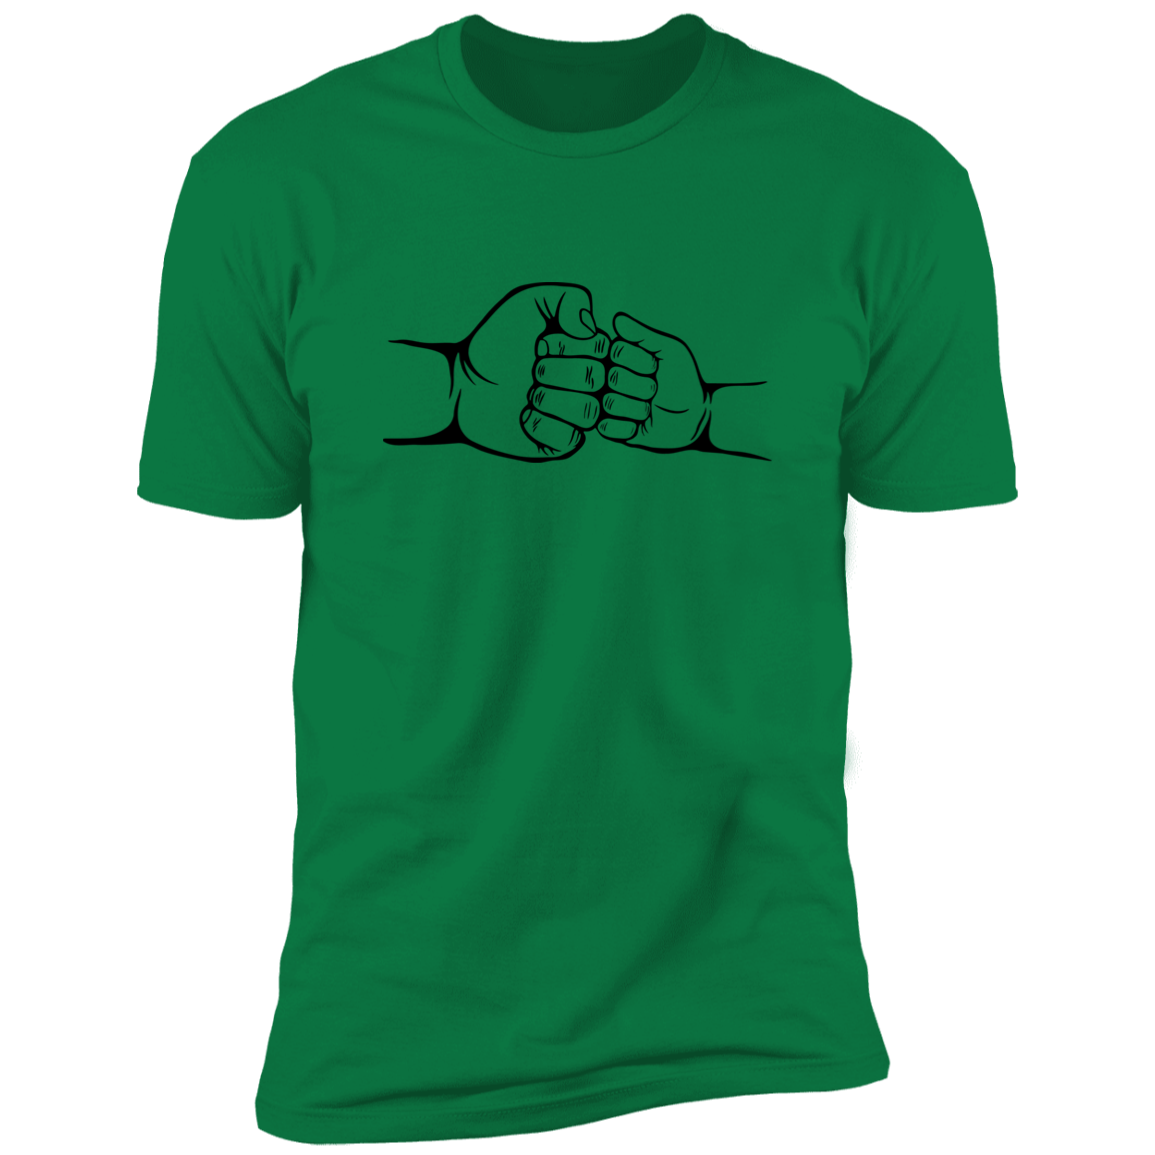 Green Shirt Short Sleeve - Fist Bump 2